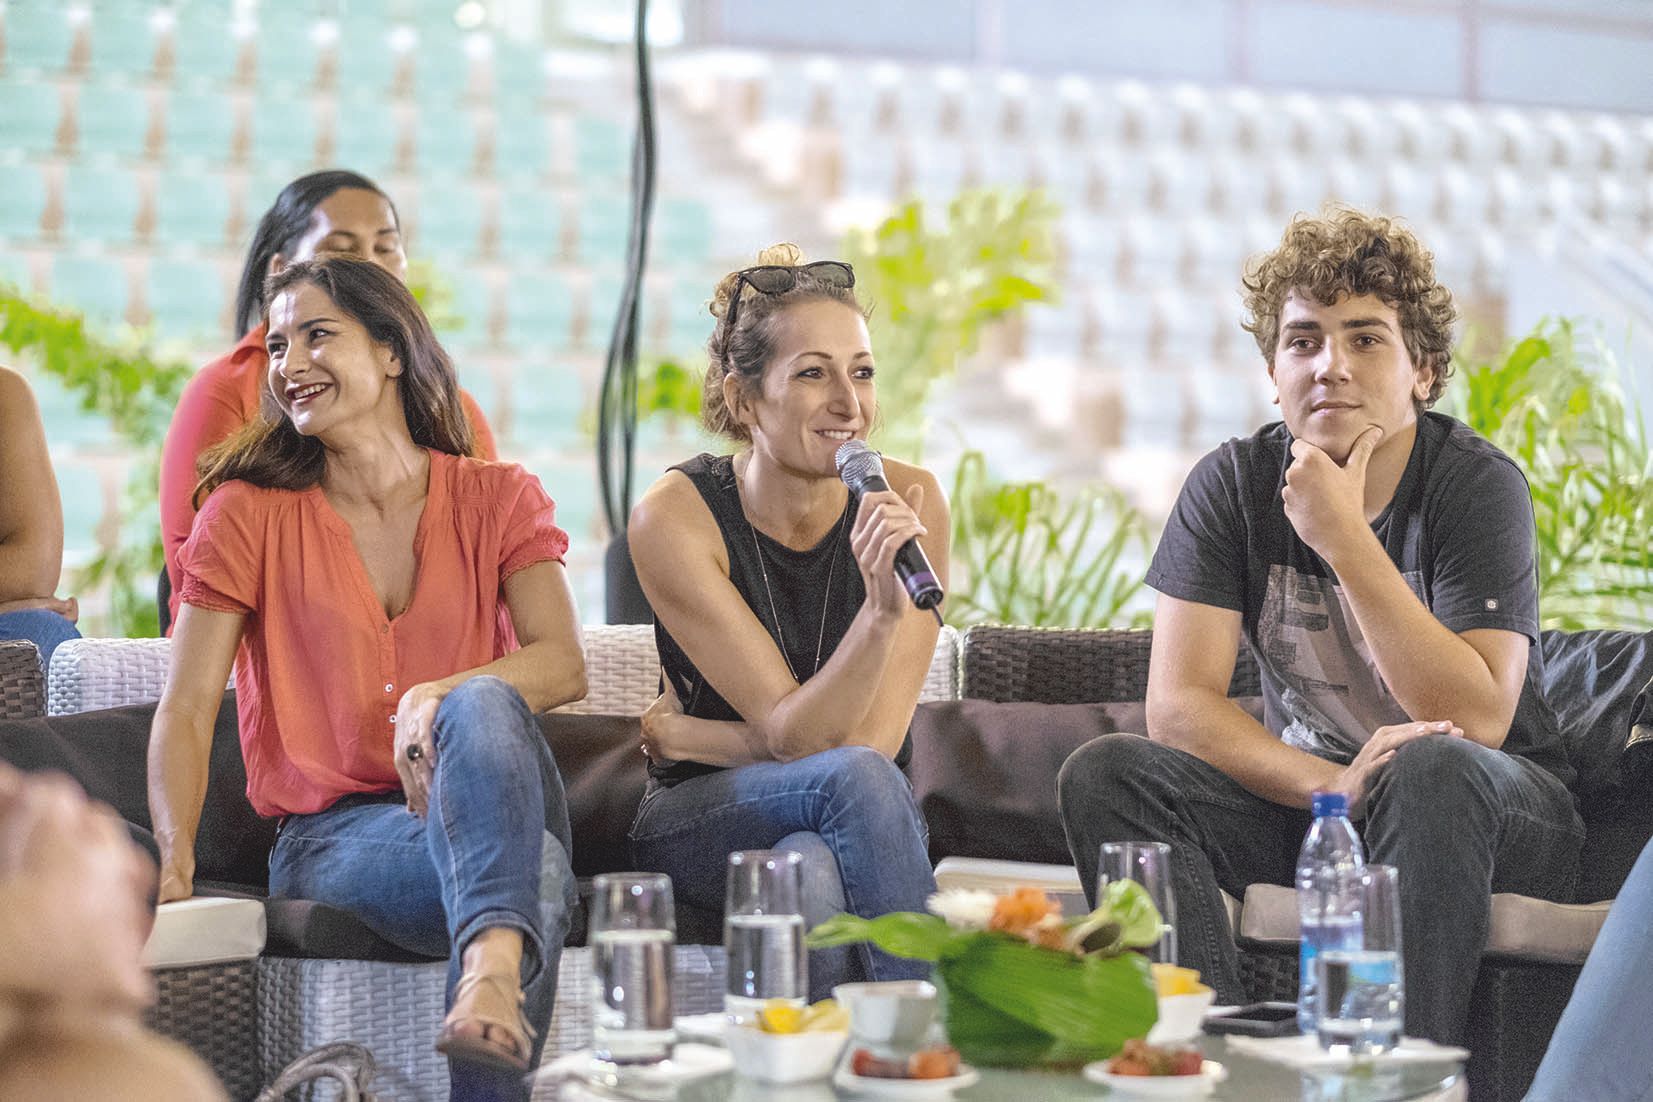 Myriam Sarg, Célia Chabut et Armagz Esteban représenteront la scène locale,  avec un humoriste débutant qui a été choisi hier soir lors du tremplin.